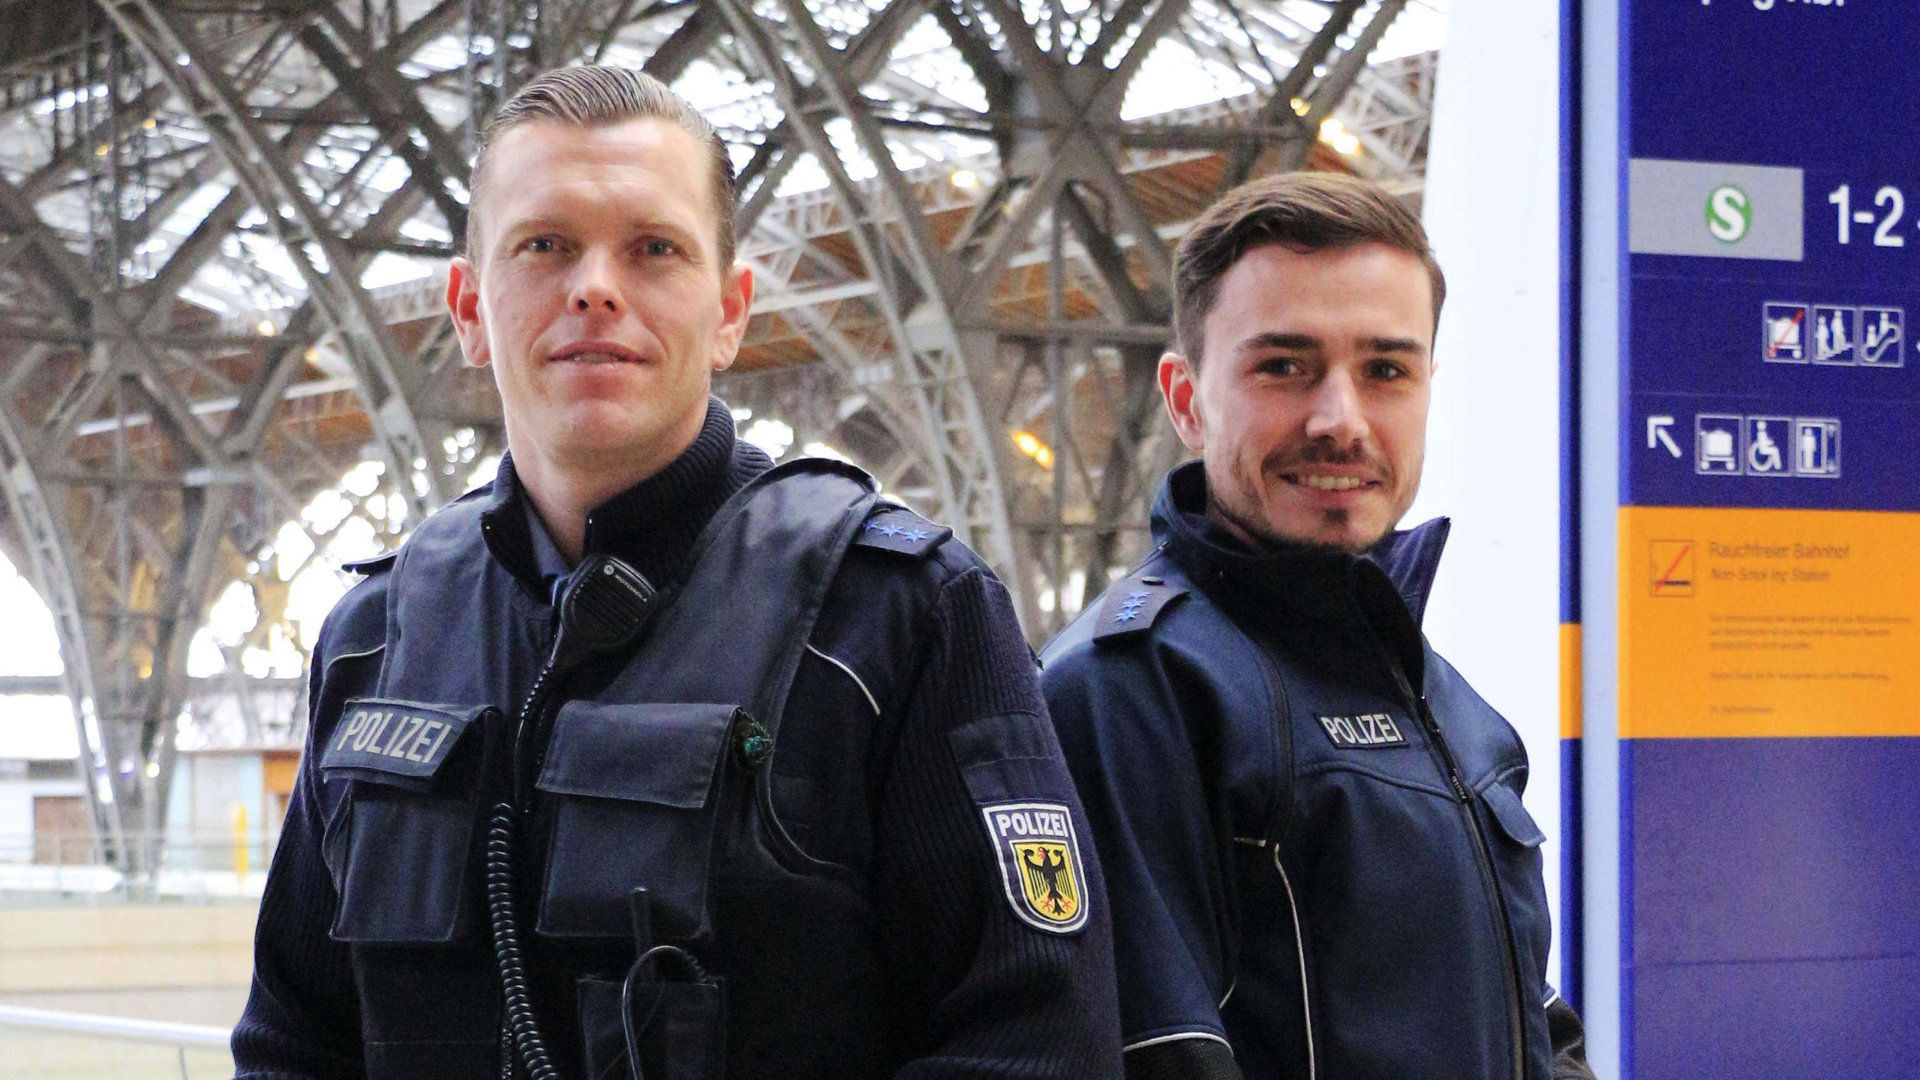 Thema u. a.: 130 km/h bei erlaubten 80 - Verkehrspolizei Stuttgart